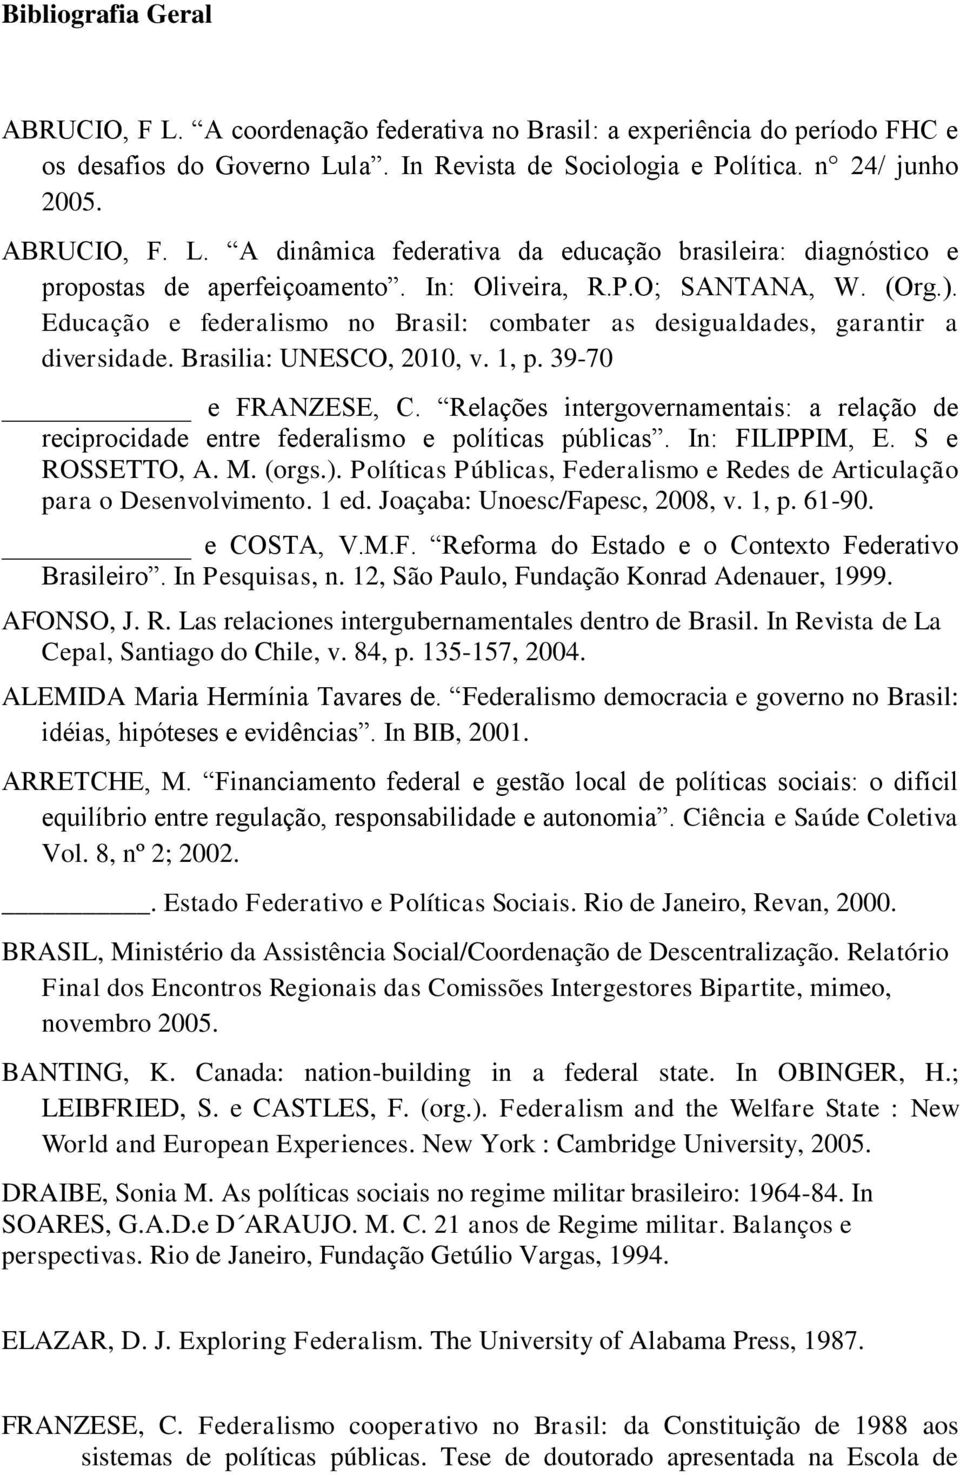 Relações intergovernamentais: a relação de reciprocidade entre federalismo e políticas públicas. In: FILIPPIM, E. S e ROSSETTO, A. M. (orgs.).